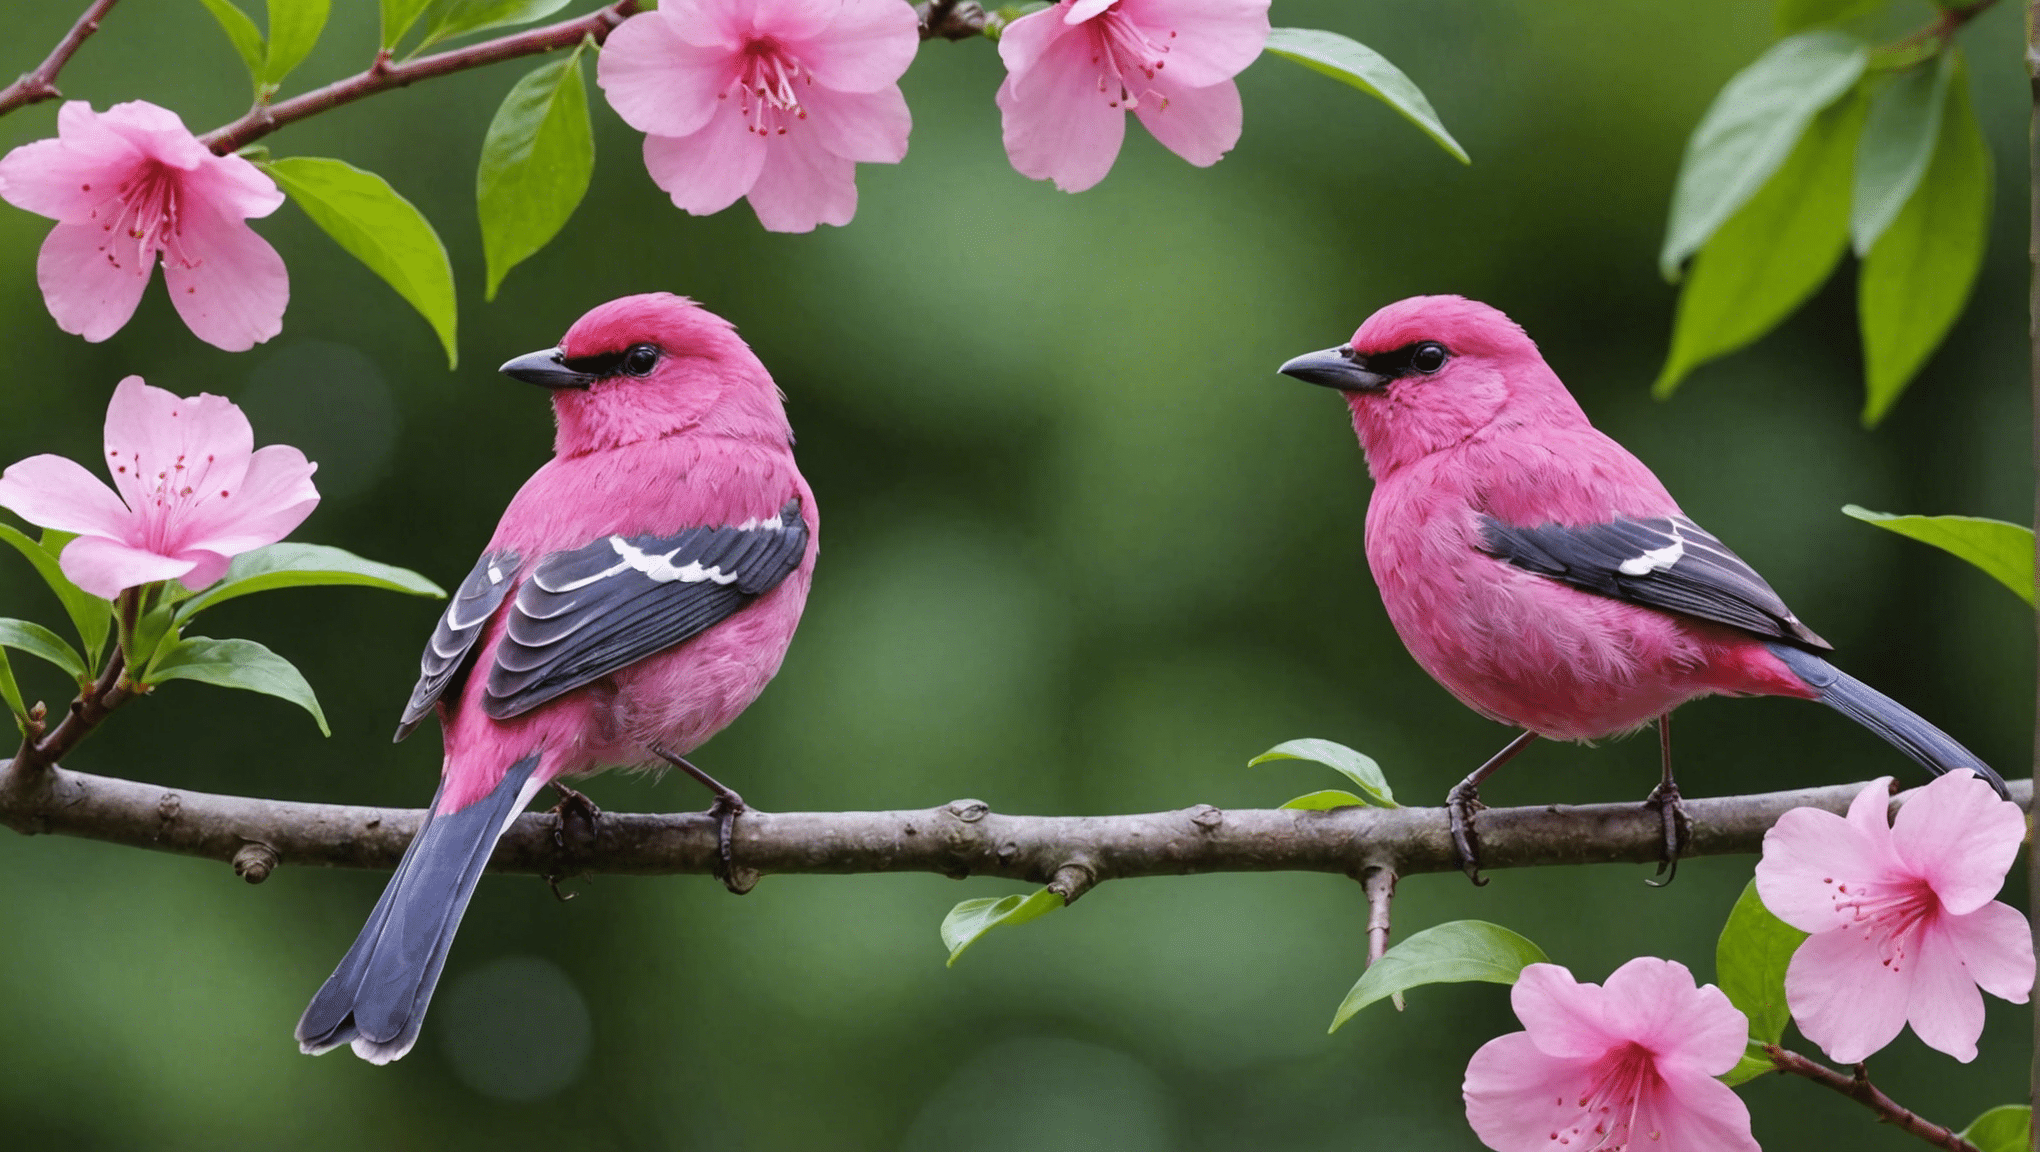 découvrez si les oiseaux roses sont réels grâce à cette discussion intrigante sur l'existence des oiseaux roses, leurs caractéristiques et leur importance dans le monde naturel.